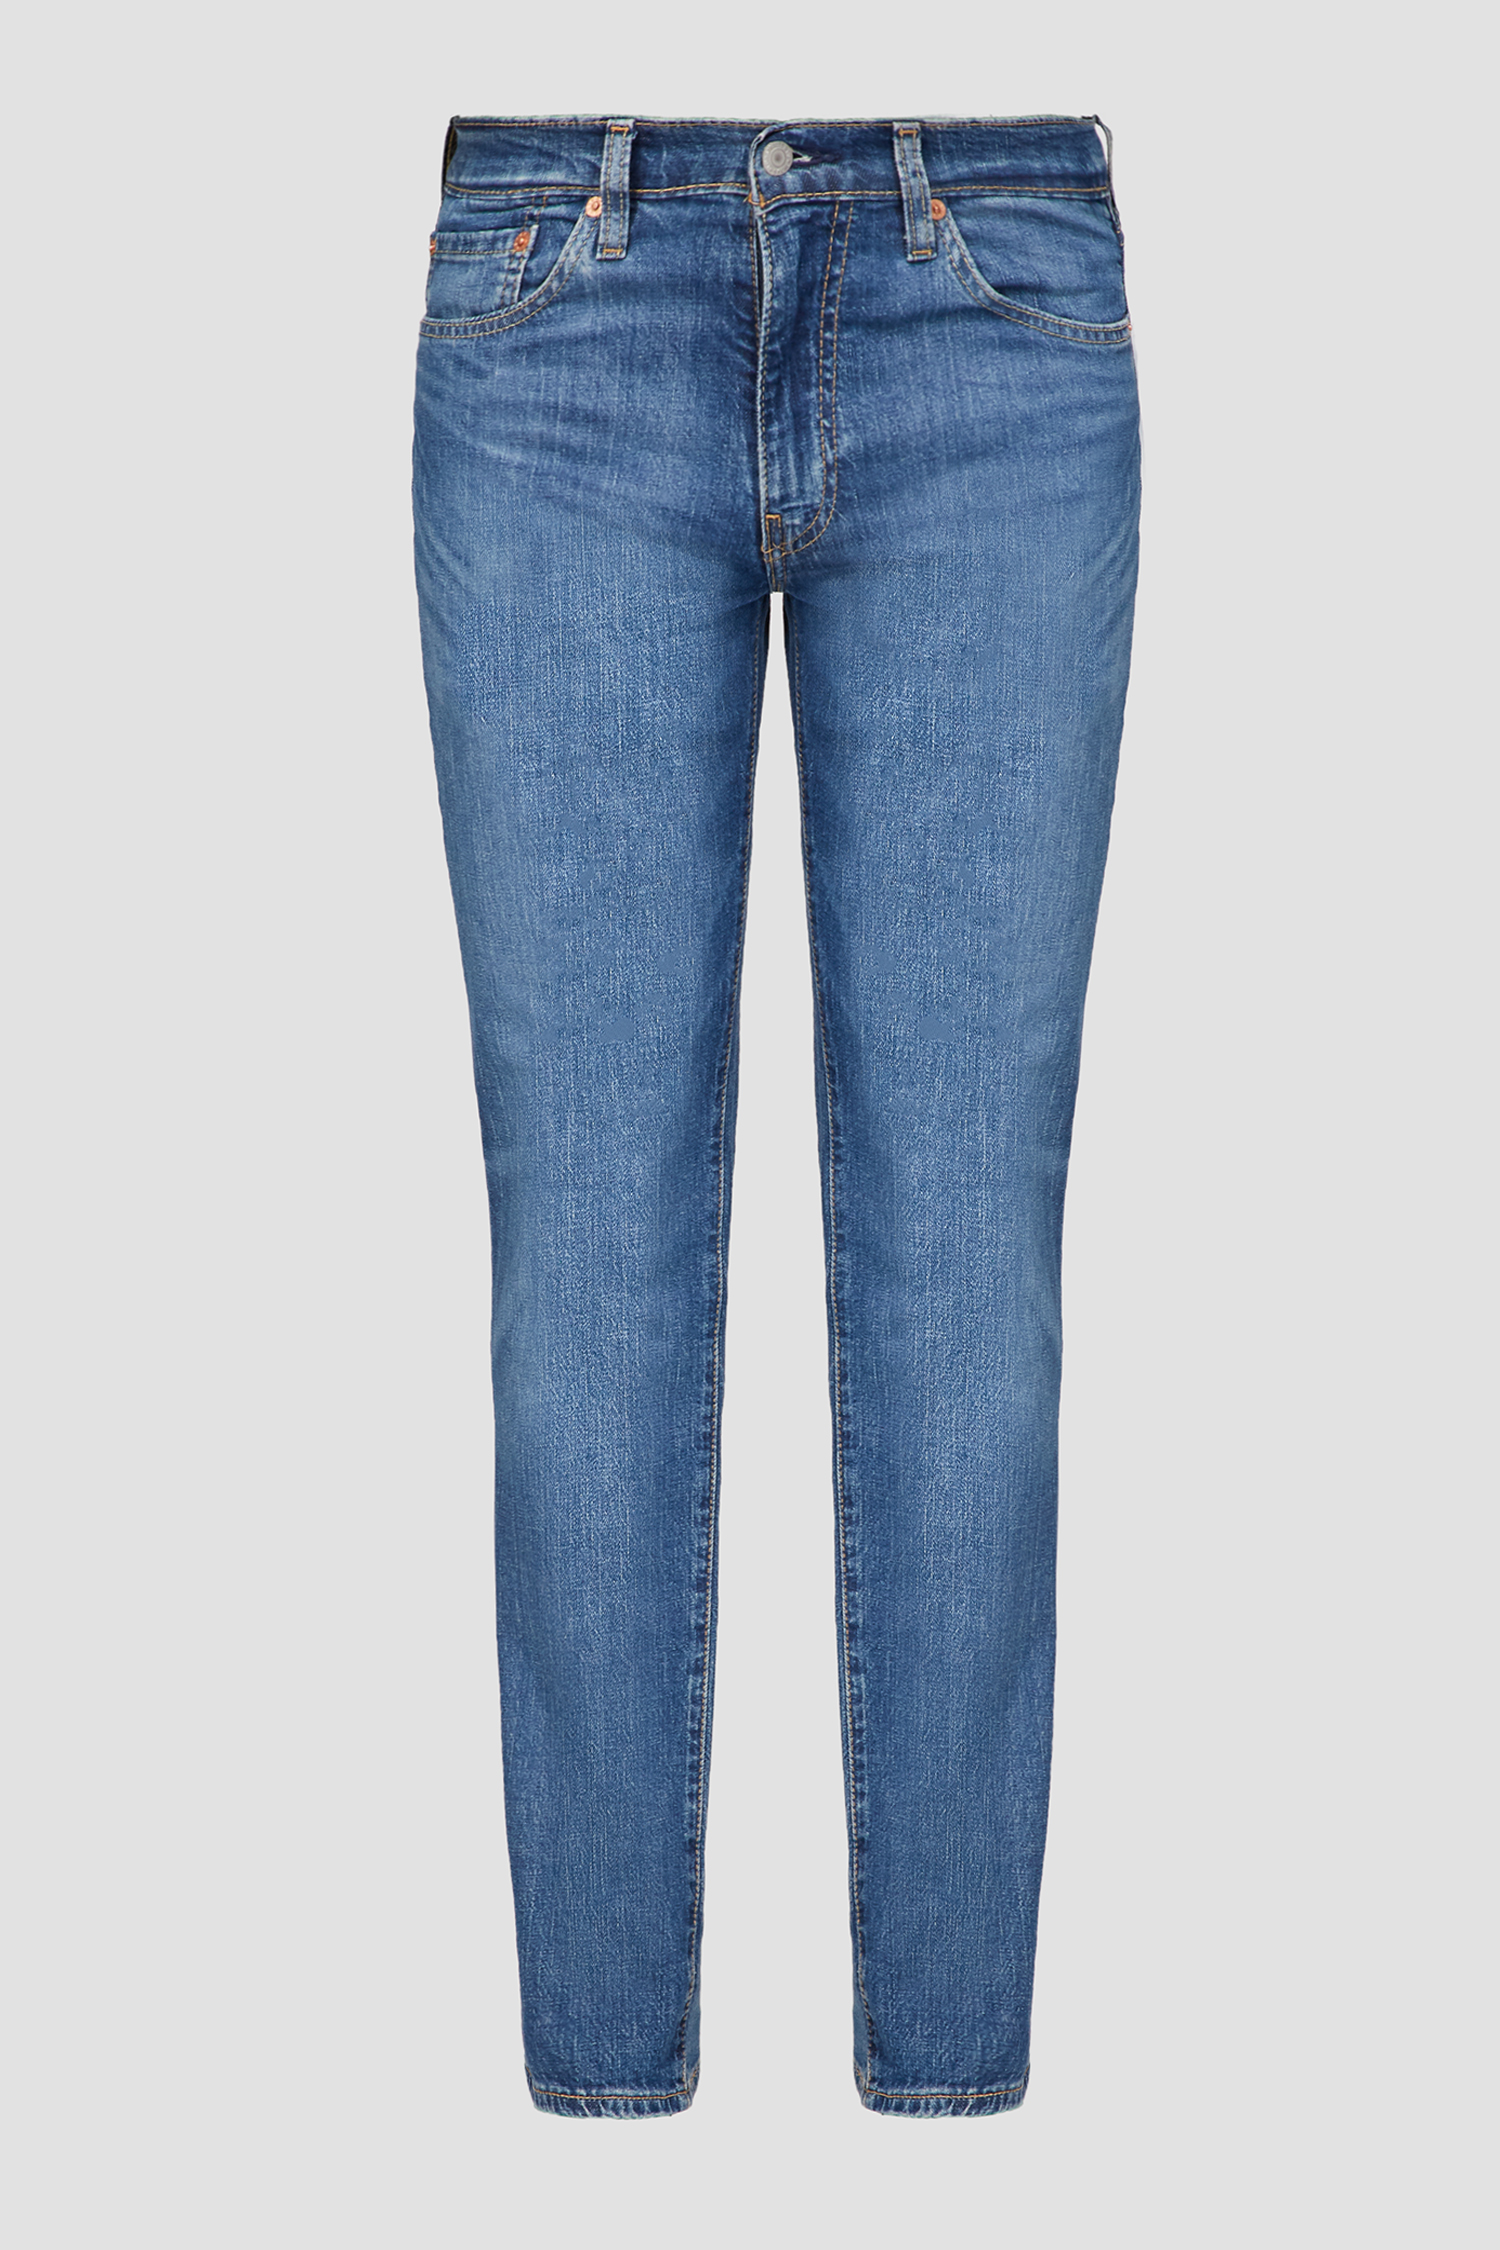 Мужские синие джинсы 511 1